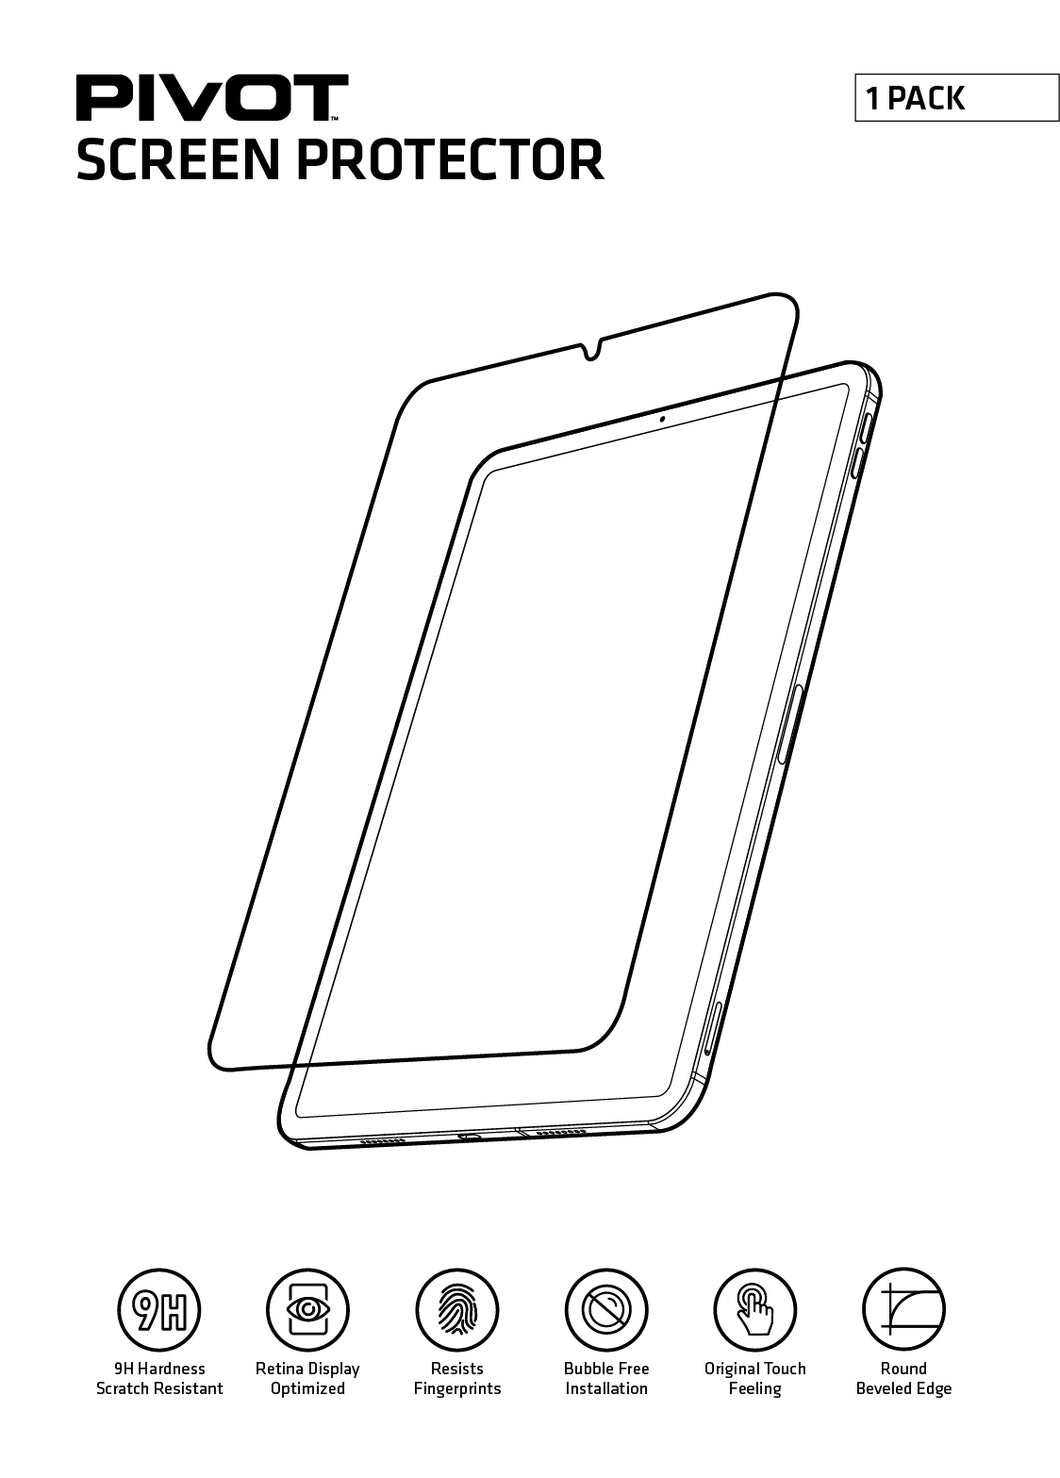 PIVOT ANTI-GLARE GLASS SCREEN PROTECTOR. FITS iPad Pro 11-inch (1st - 4th gen), iPad Air (4-5th Gen)